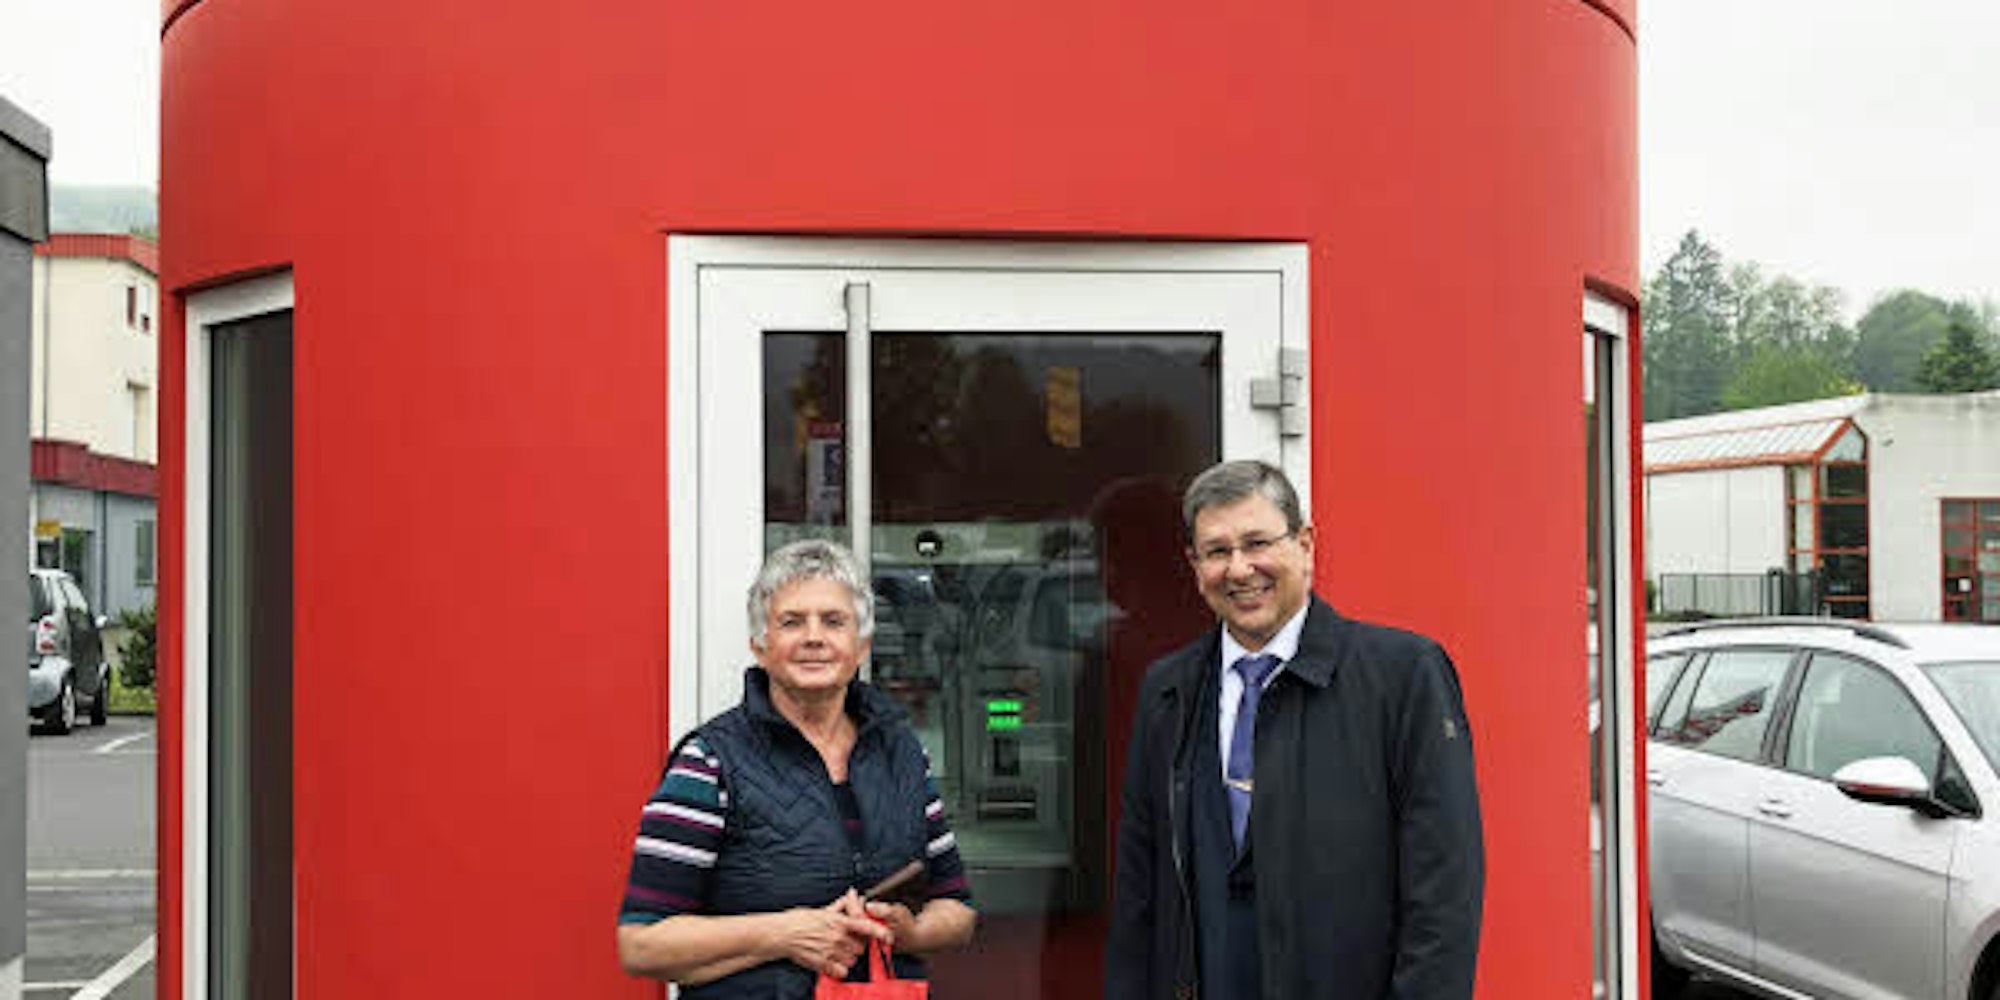 Beate Becker aus Eitorf war die erste Kundin im neuen SB-Pavillon. Sie wurde von Bernd Prangenberg, Regionaldirektor der Kreissparkasse Köln, persönlich begrüßt.